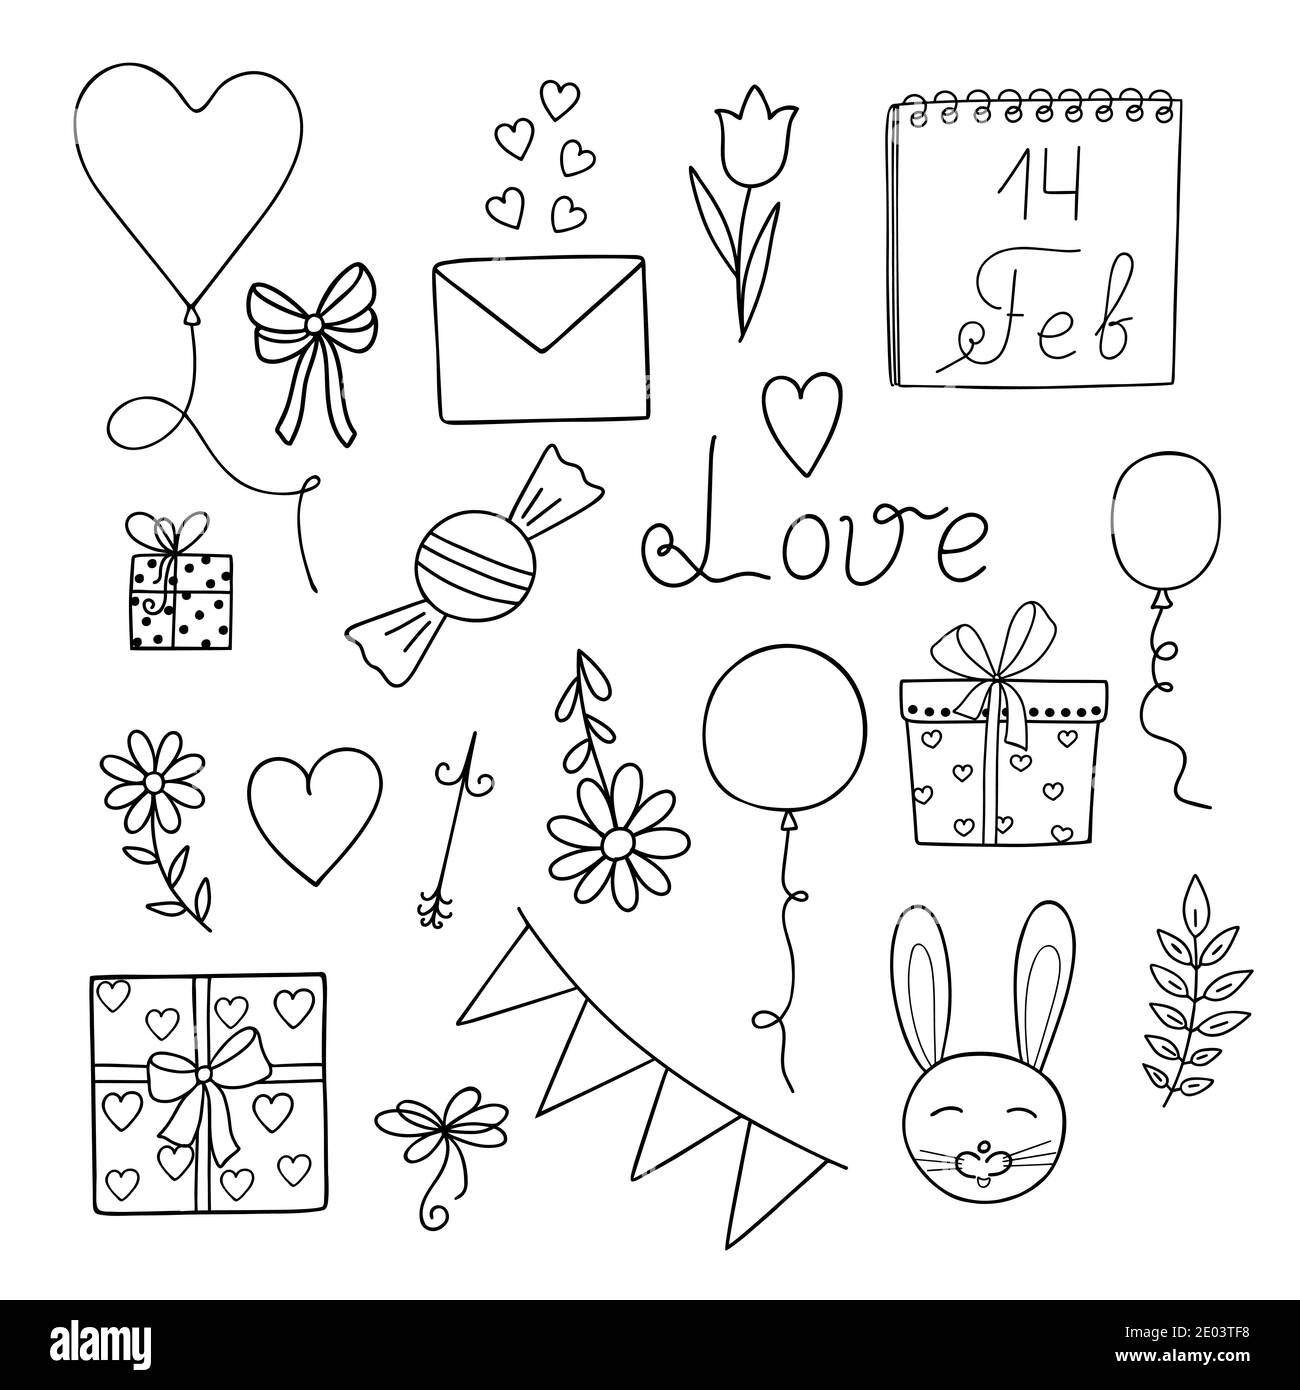 Bonito conjunto de amor elementos de diseño en el contorno dibujado a mano  estilo de fideos, imágenes simples para el amor y San Valentín decoración  de vacaciones, tarjetas de felicitación, banners, tela,